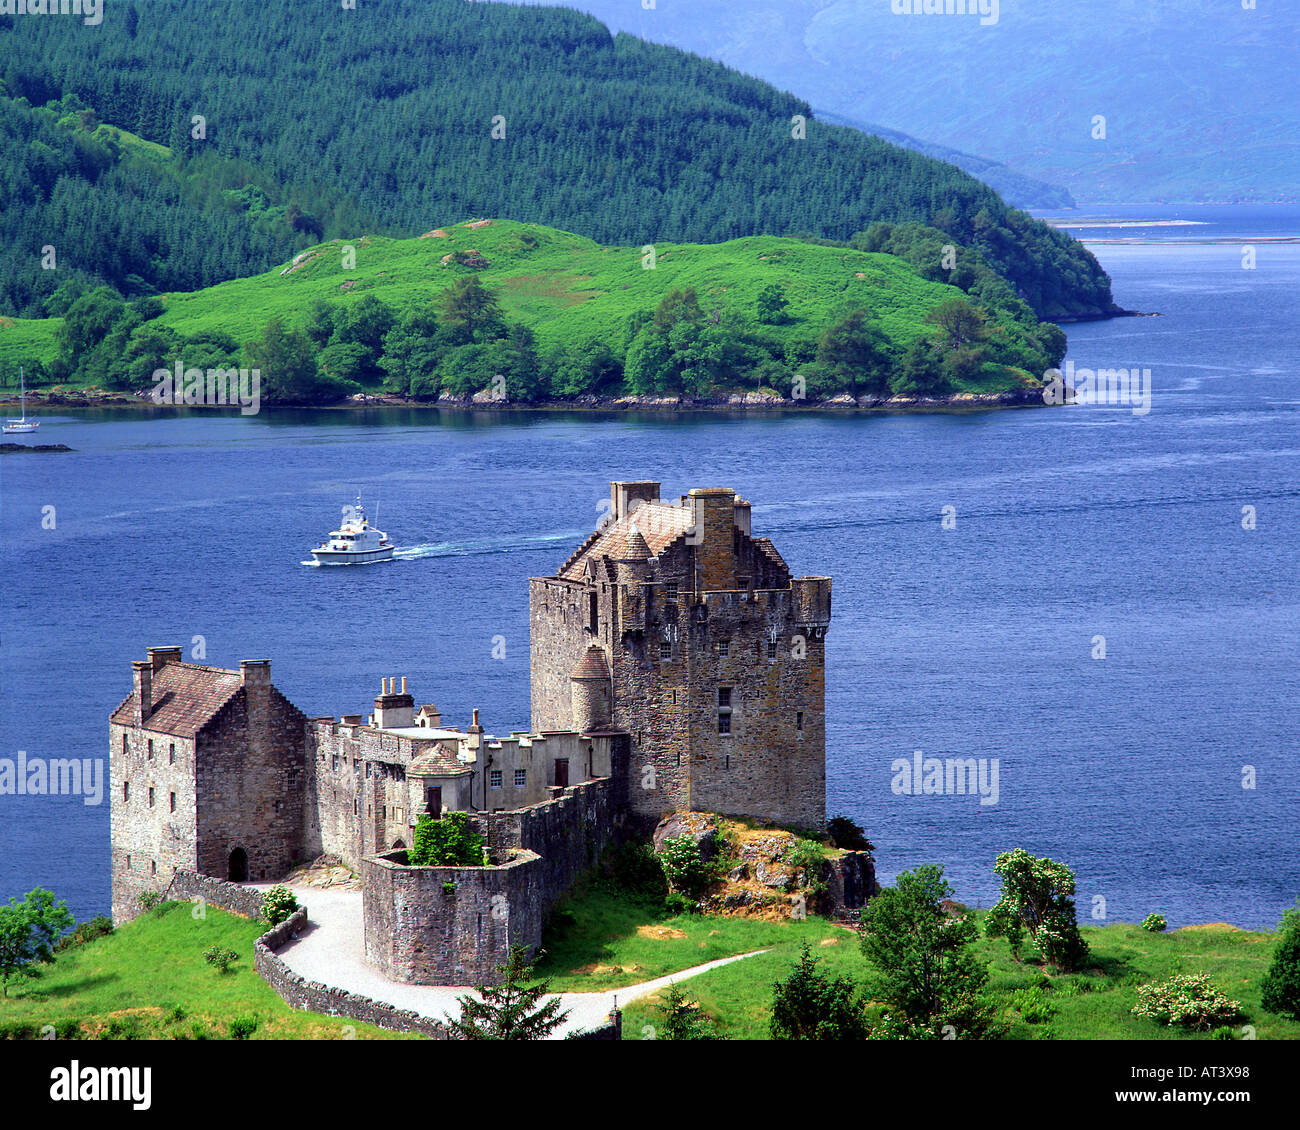 GB - Ecosse : le château d'Eilean Donan dans les Highlands Banque D'Images